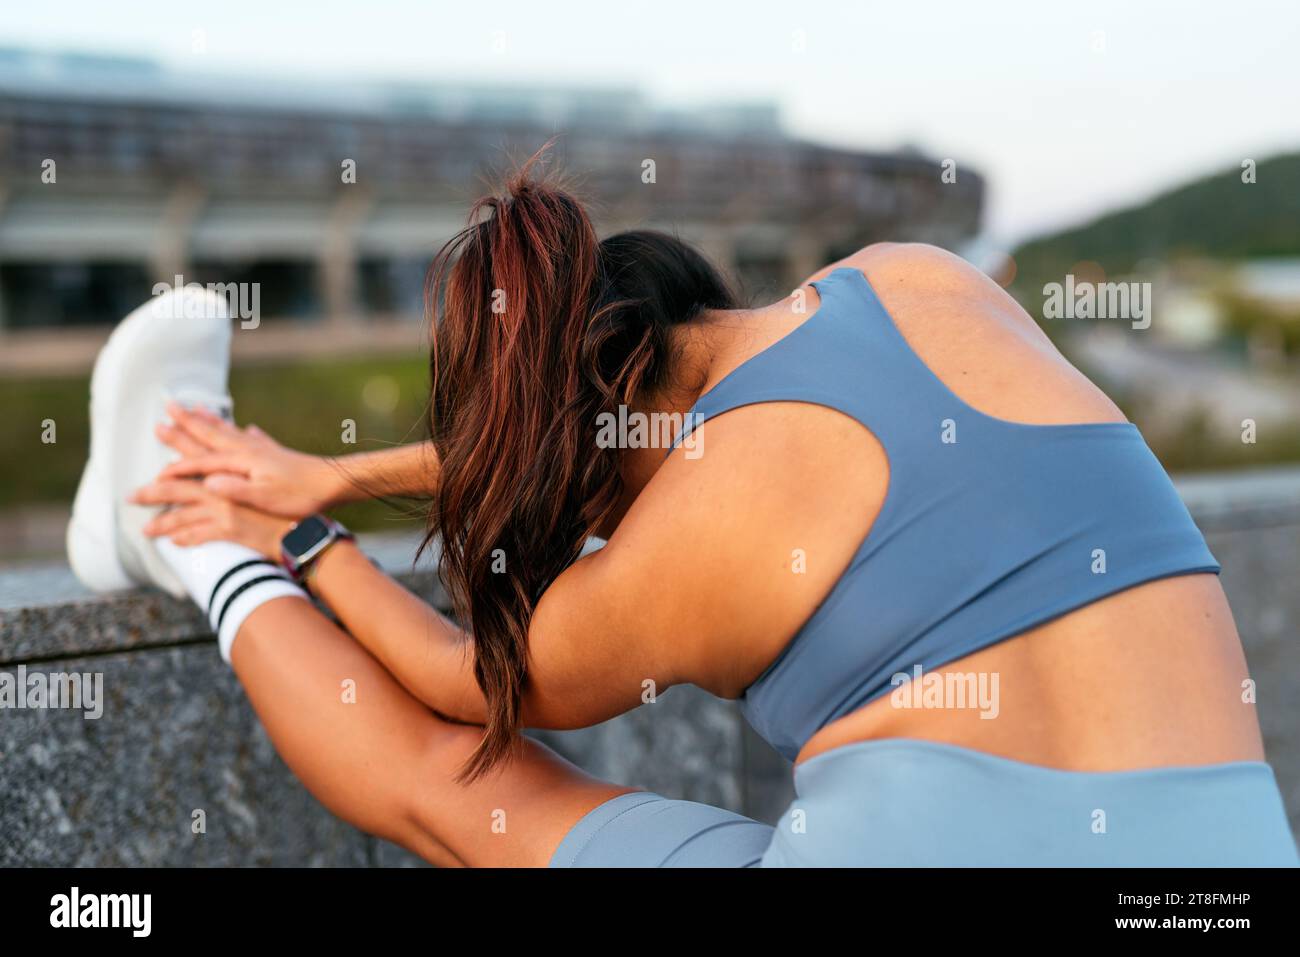 Lateinamerikanische Frau führt eine Oberschenkelmuskulatur-Dehnung vor einer Outdoor-Übung durch, die beispielhaft für einen gesunden Lebensstil ist. Stockfoto